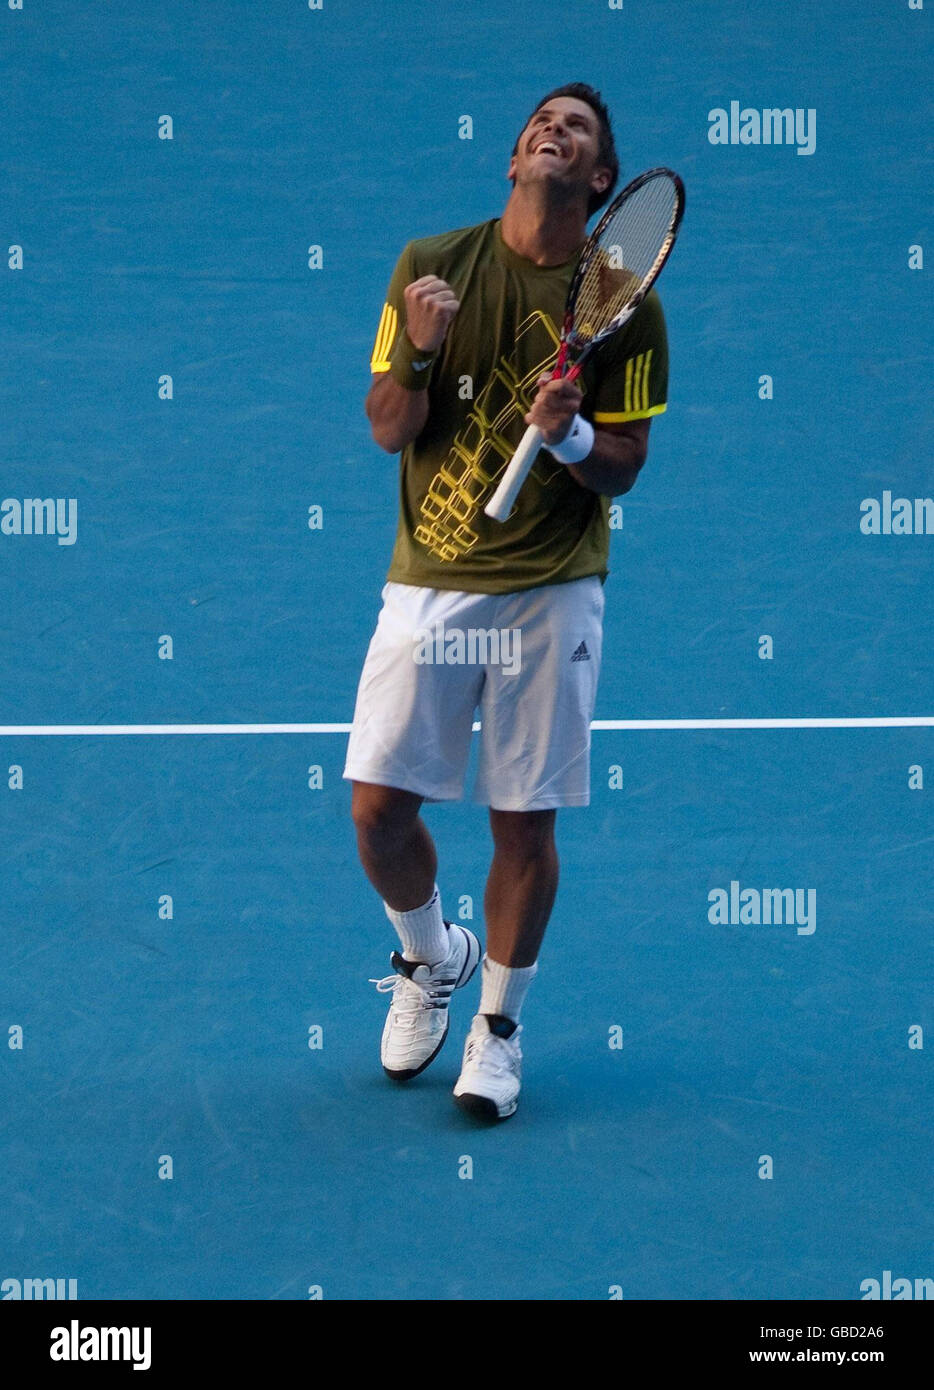 Fernando Verdasco in Spagna festeggia il battimento di Andy Murray in Gran Bretagna durante l'Australian Open 2009 al Melbourne Park, Melbourne, Australia. Foto Stock